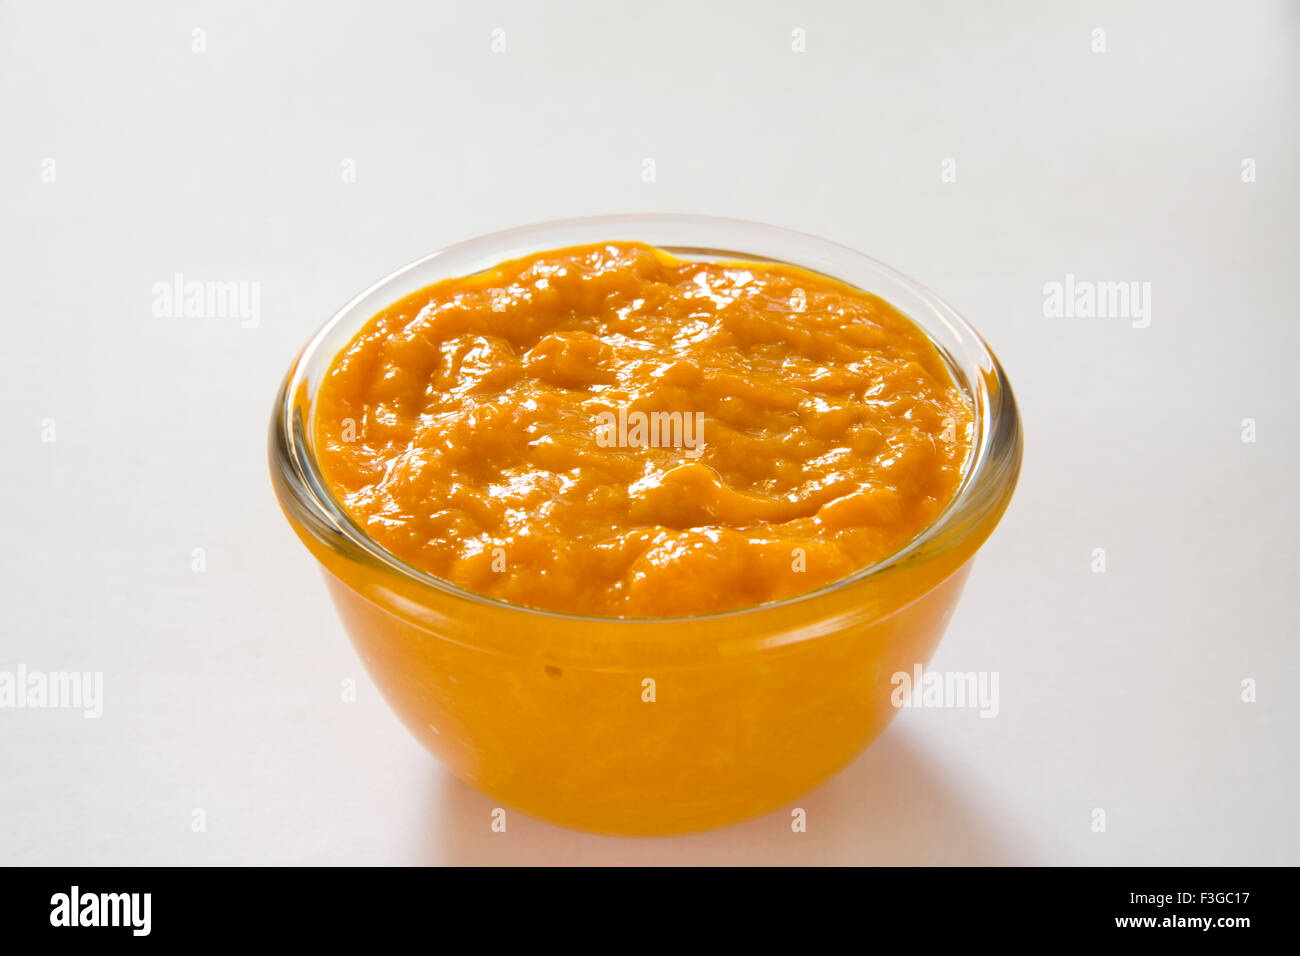 Aamras dolce piatto, pasta di frutta mango dessert servito in recipiente di vetro su sfondo bianco Foto Stock